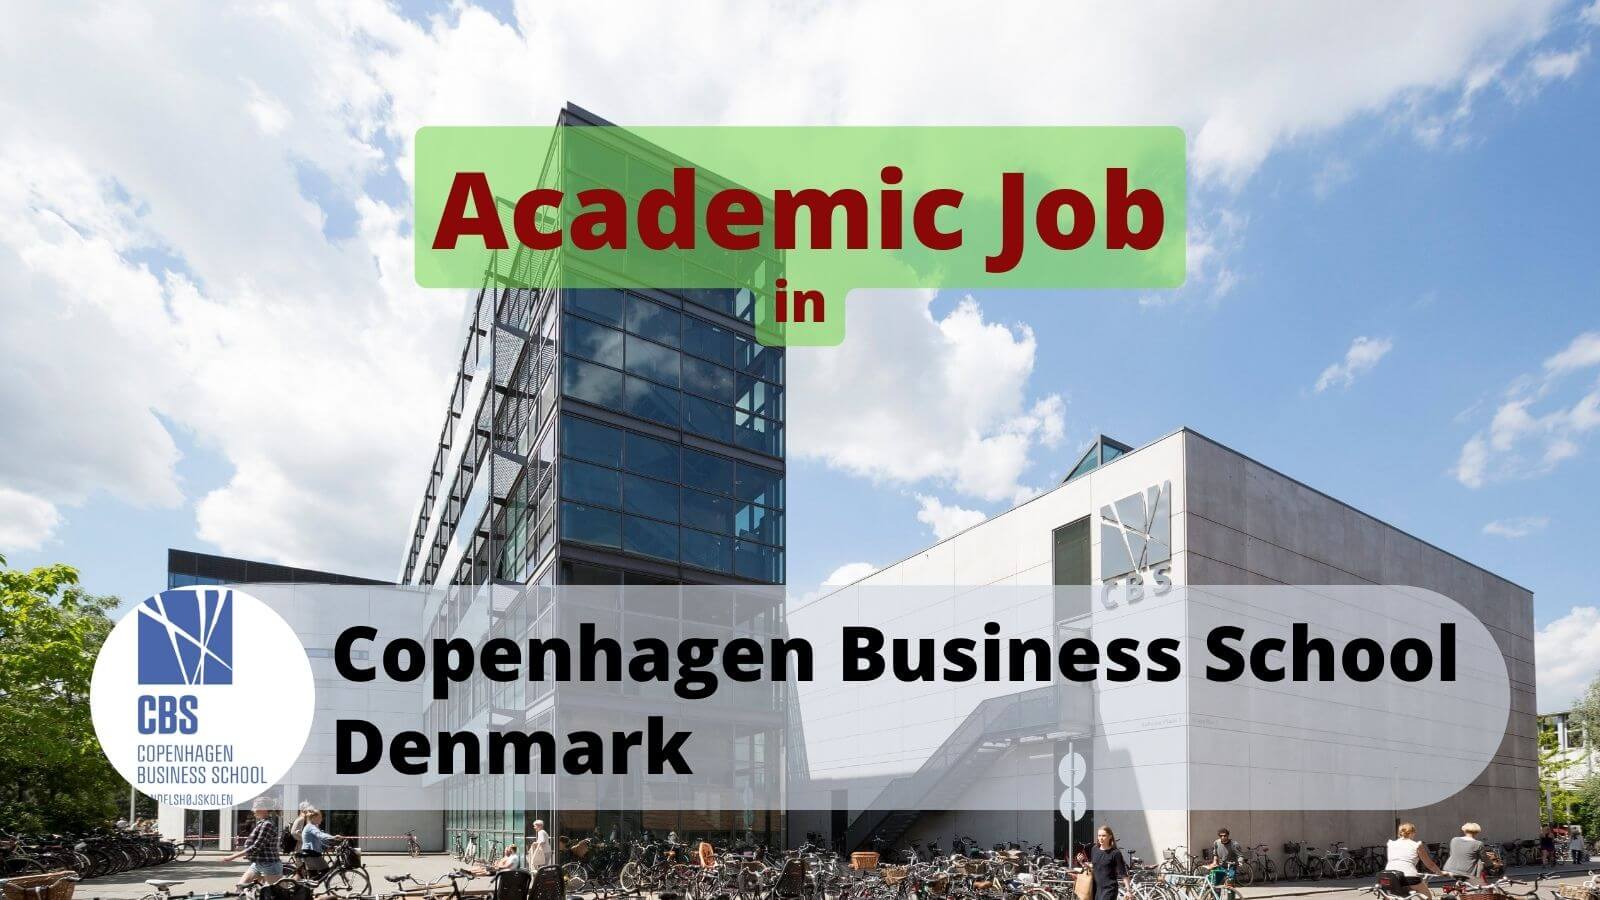 Academic job in CBS Denmark